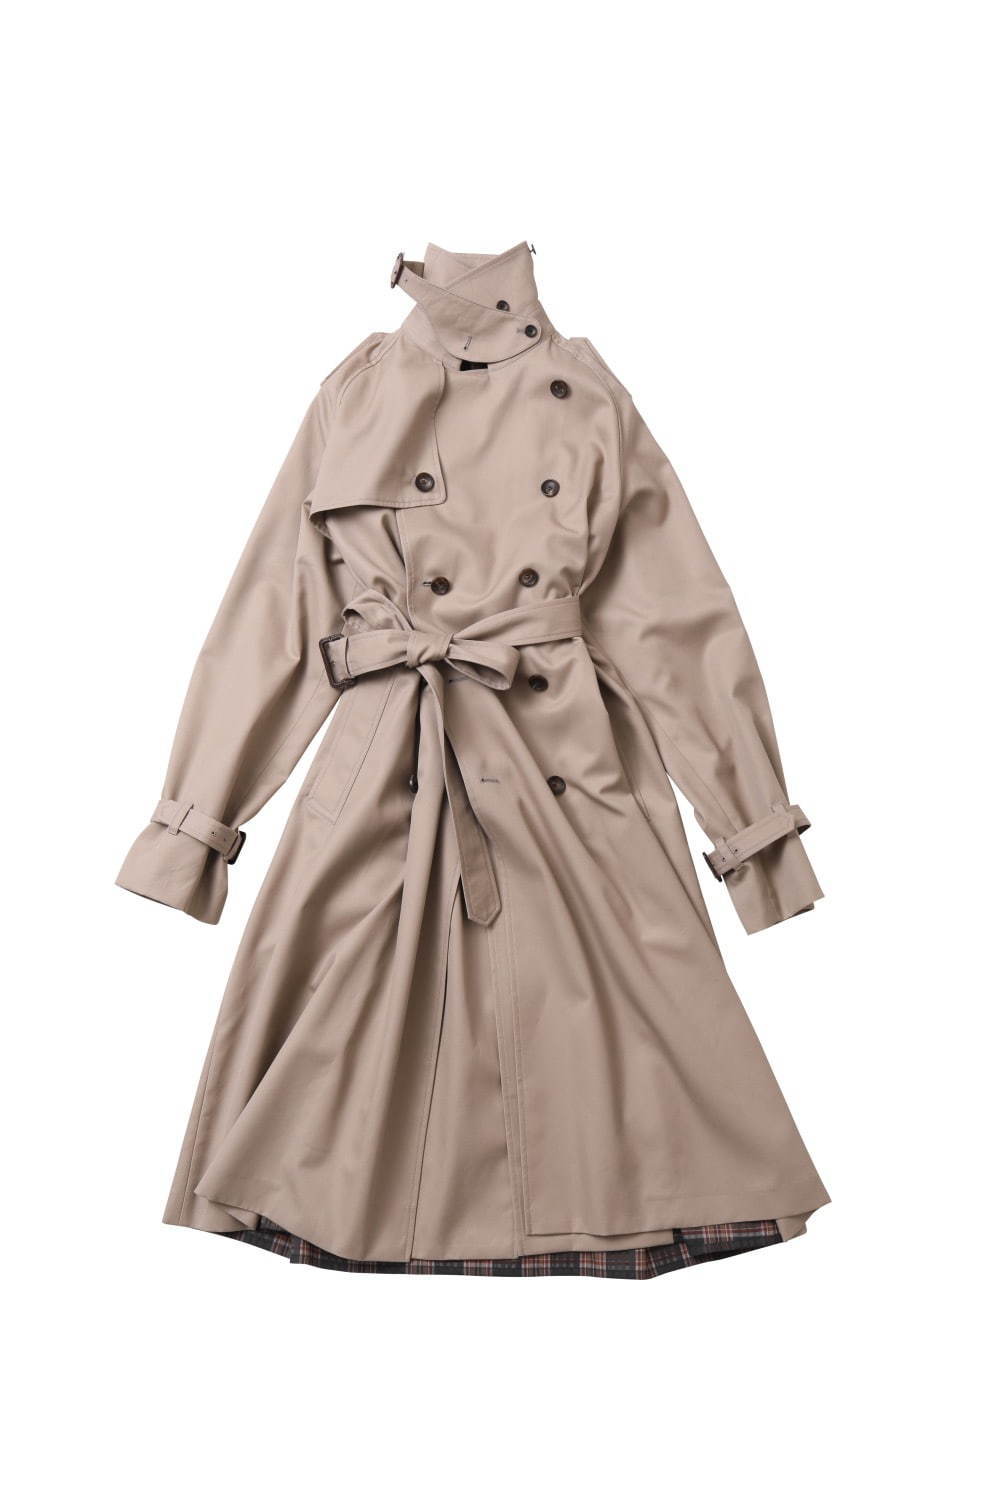 ビューティフルピープルの3wayトレンチコート チェックワンピースのレイヤード風デザイン ファッションプレス